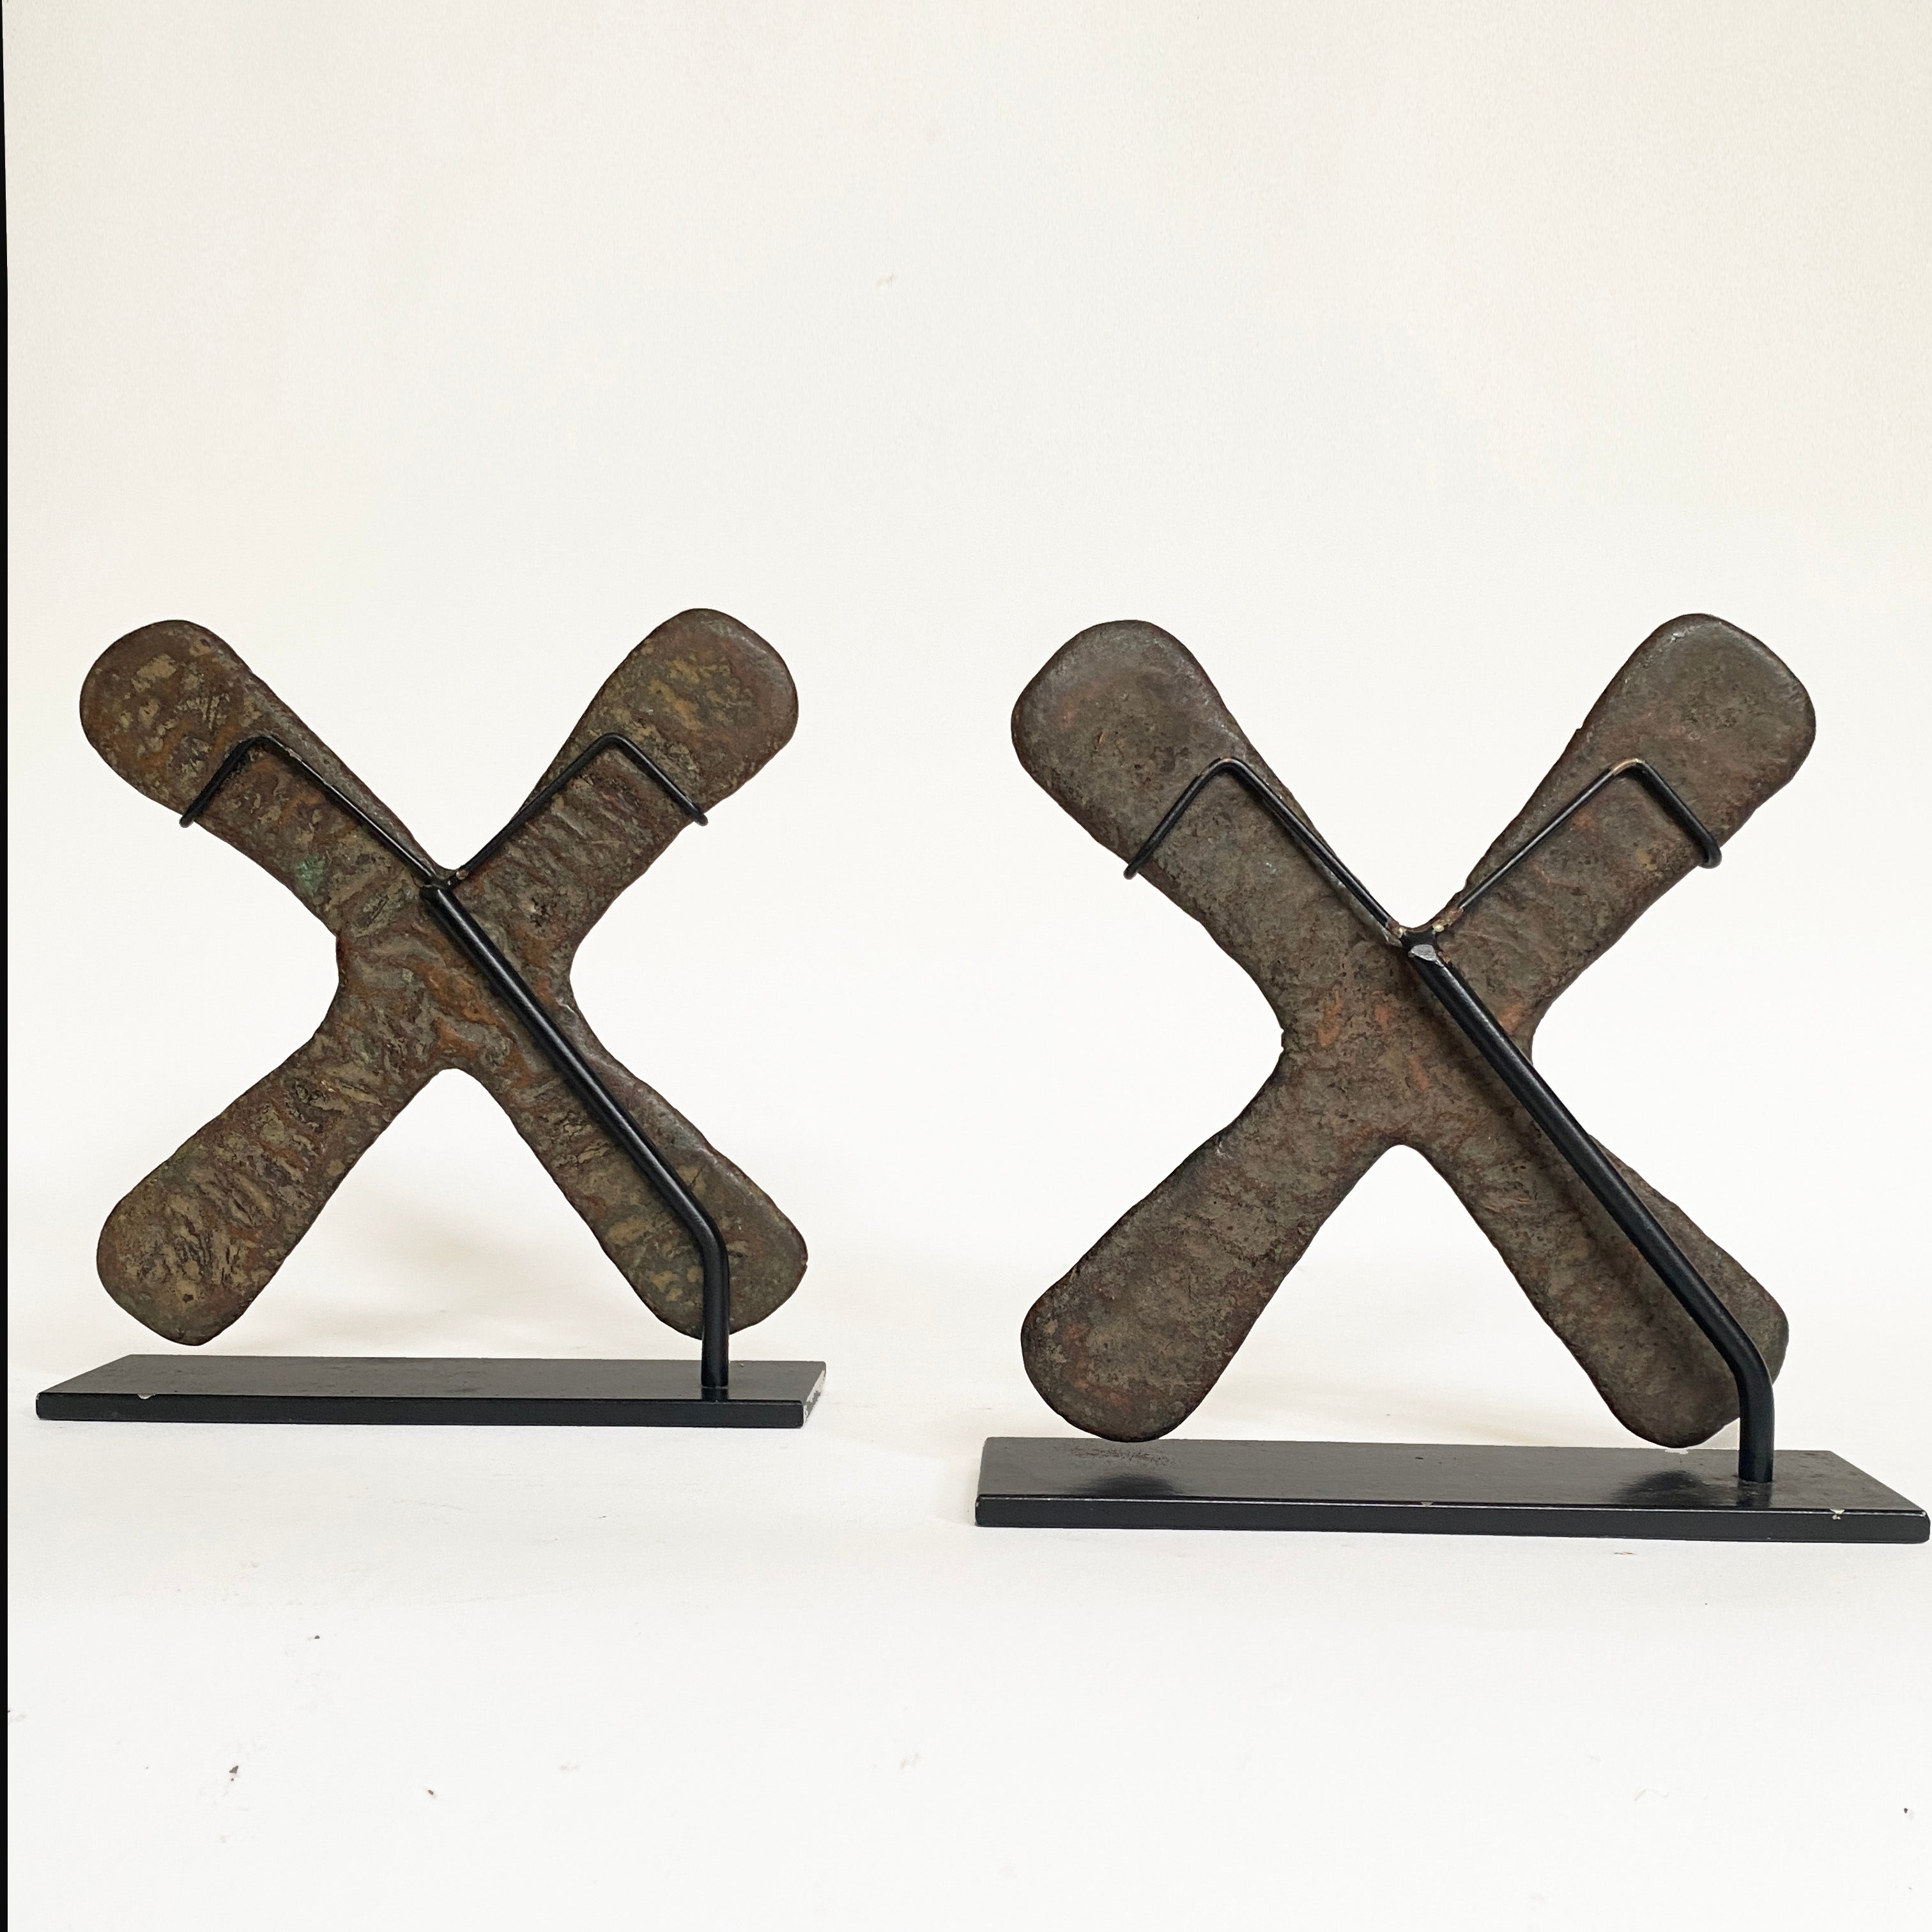 Kupferkreuze namens Handa, Region Katanga, Republik Kongo, 19.

Gegossenes Kupfer in Form eines gleicharmigen Kreuzes, das in der Region Katanga in der Demokratischen Republik Kongo als Zahlungsmittel verwendet wurde und Handa genannt wird.